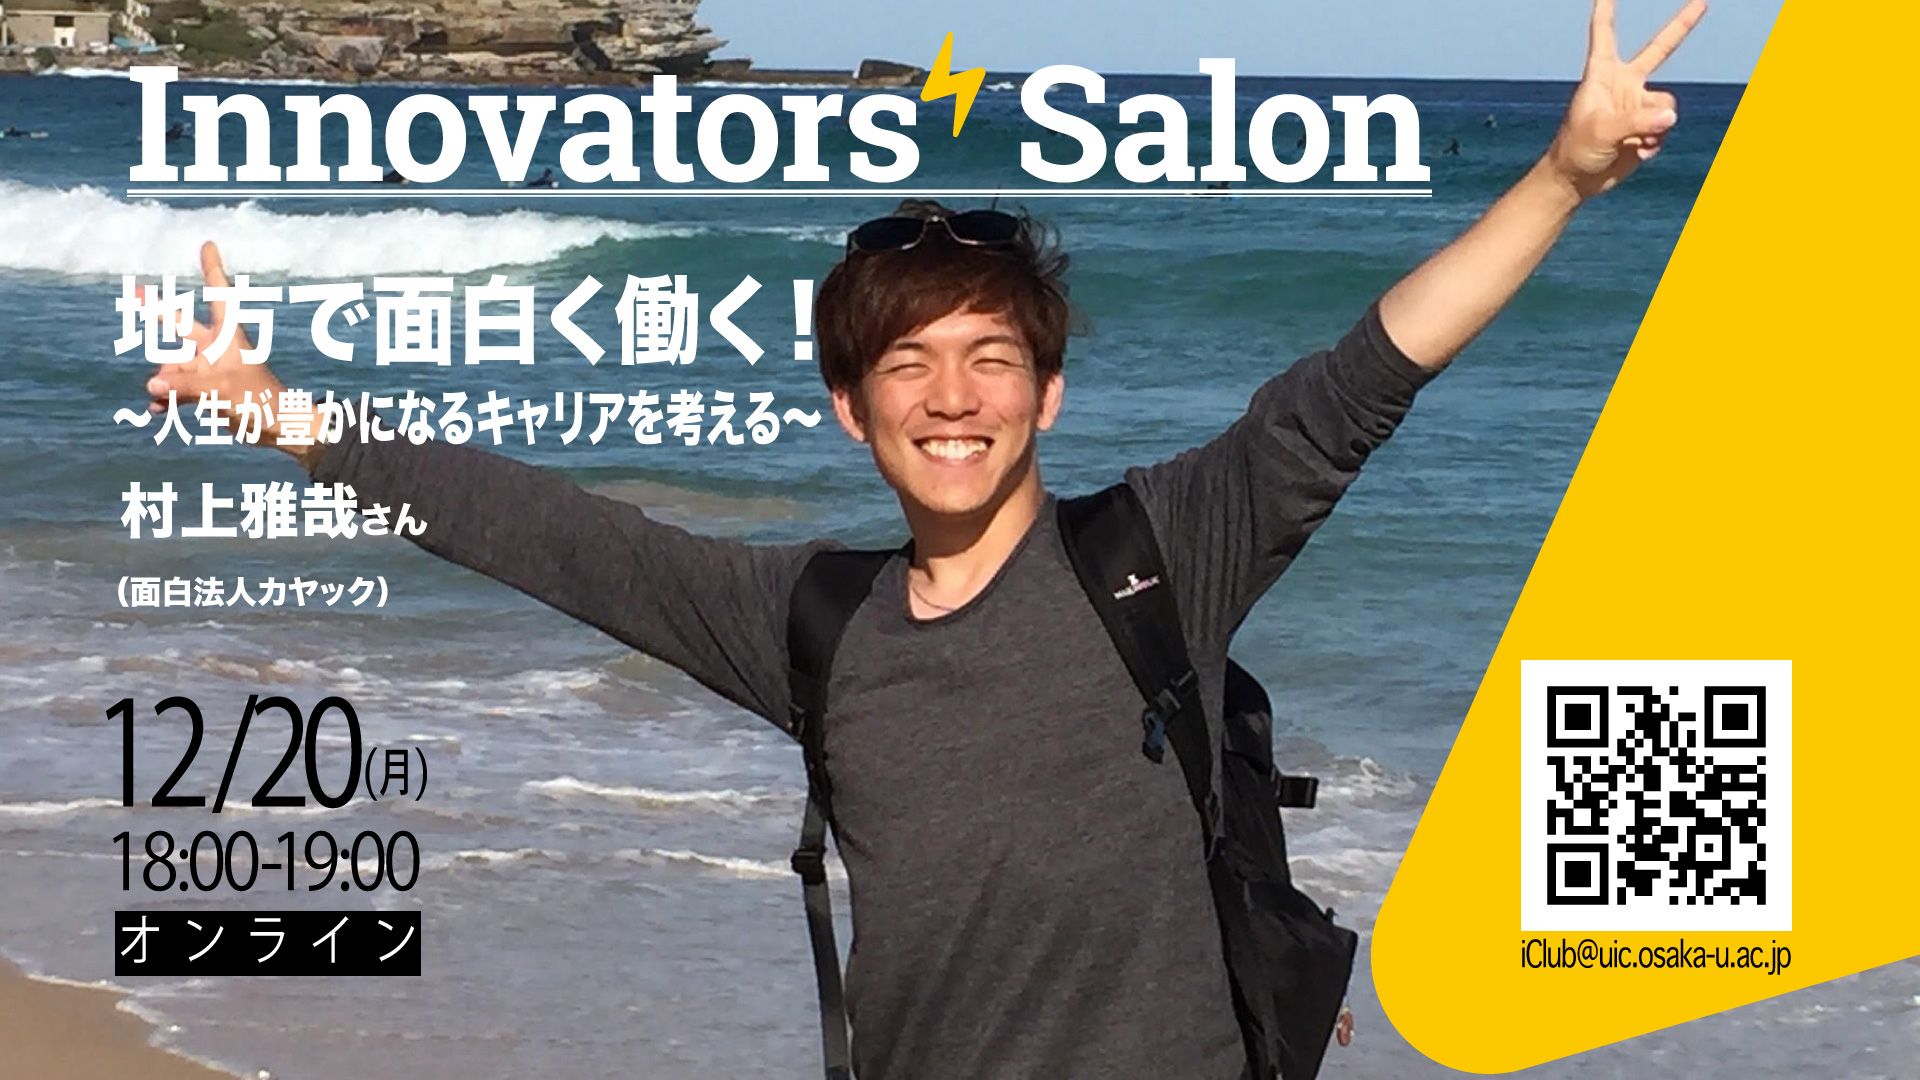 【オンライン】Innovators’ Salon 地方で面白く働く！〜人生が豊かになるキャリアを考える〜【一般公開】